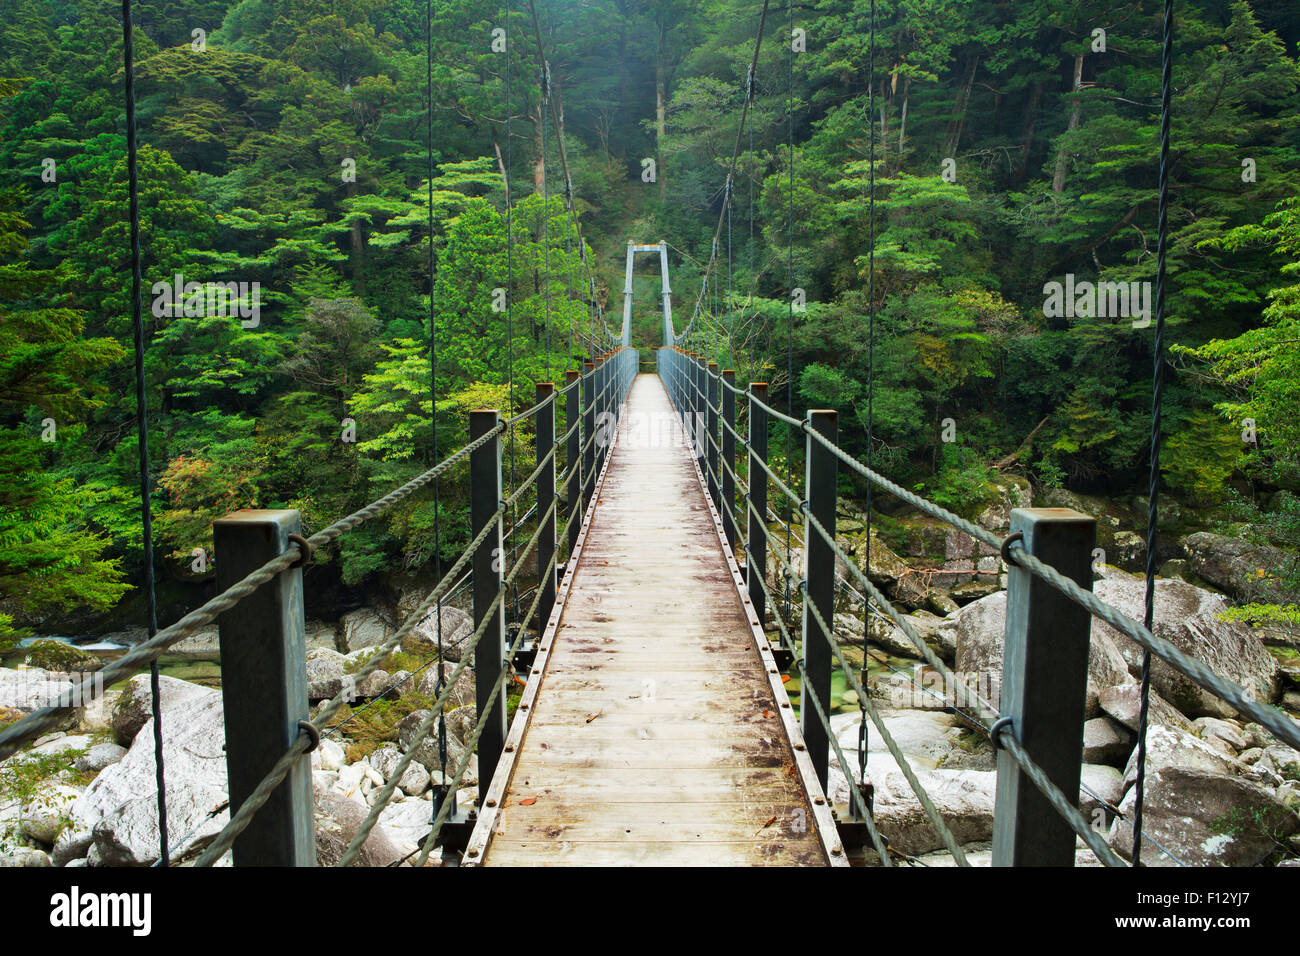 Un pont suspendu traversant une rivière dans une luxuriante forêt tropicale sur le sud de l'île de Yakushima (屋久島), au Japon. Banque D'Images